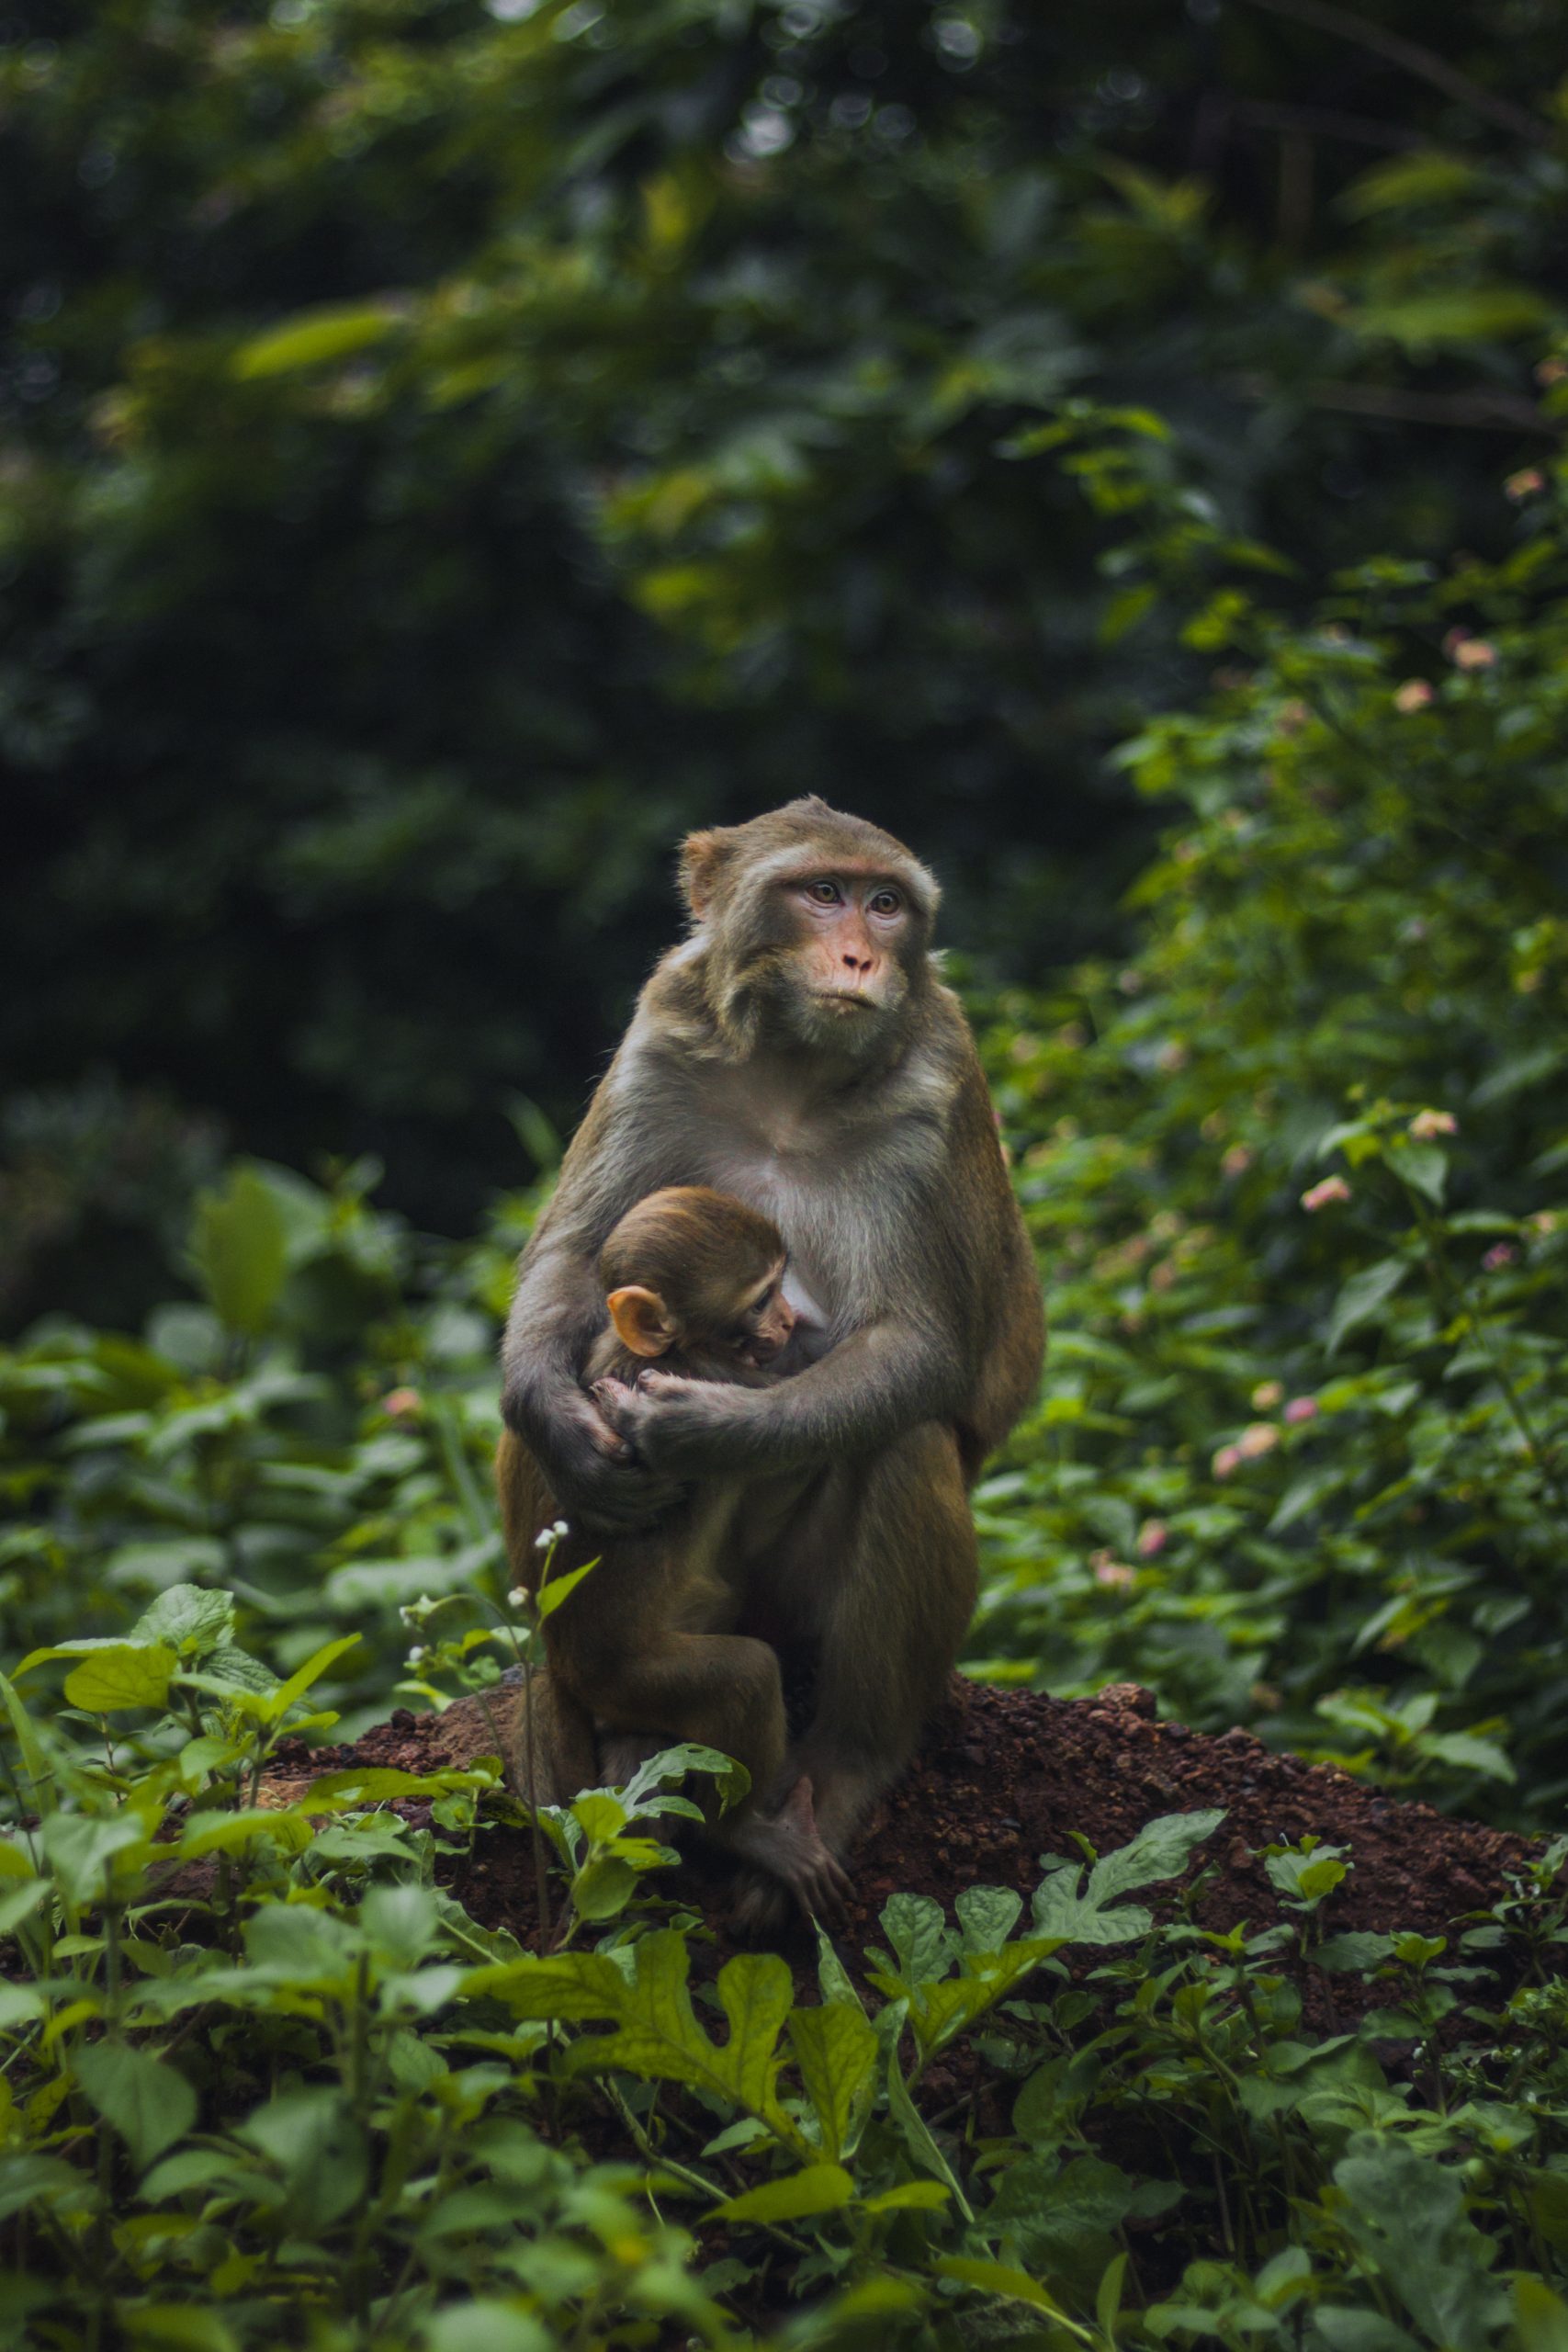 Hình ảnh con khỉ đáng yêu: Nếu bạn đang cần một bức tranh đáng yêu để trang trí phòng nhỏ của mình, chúng tôi có một số hình ảnh về con khỉ đáng yêu, khiến bạn không thể rời mắt. Từ khỉ nhỏ xinh đến những chú khỉ đầu rỗng mắt to, bạn sẽ không thể chối từ vì sự dễ thương mê hoặc của chúng.